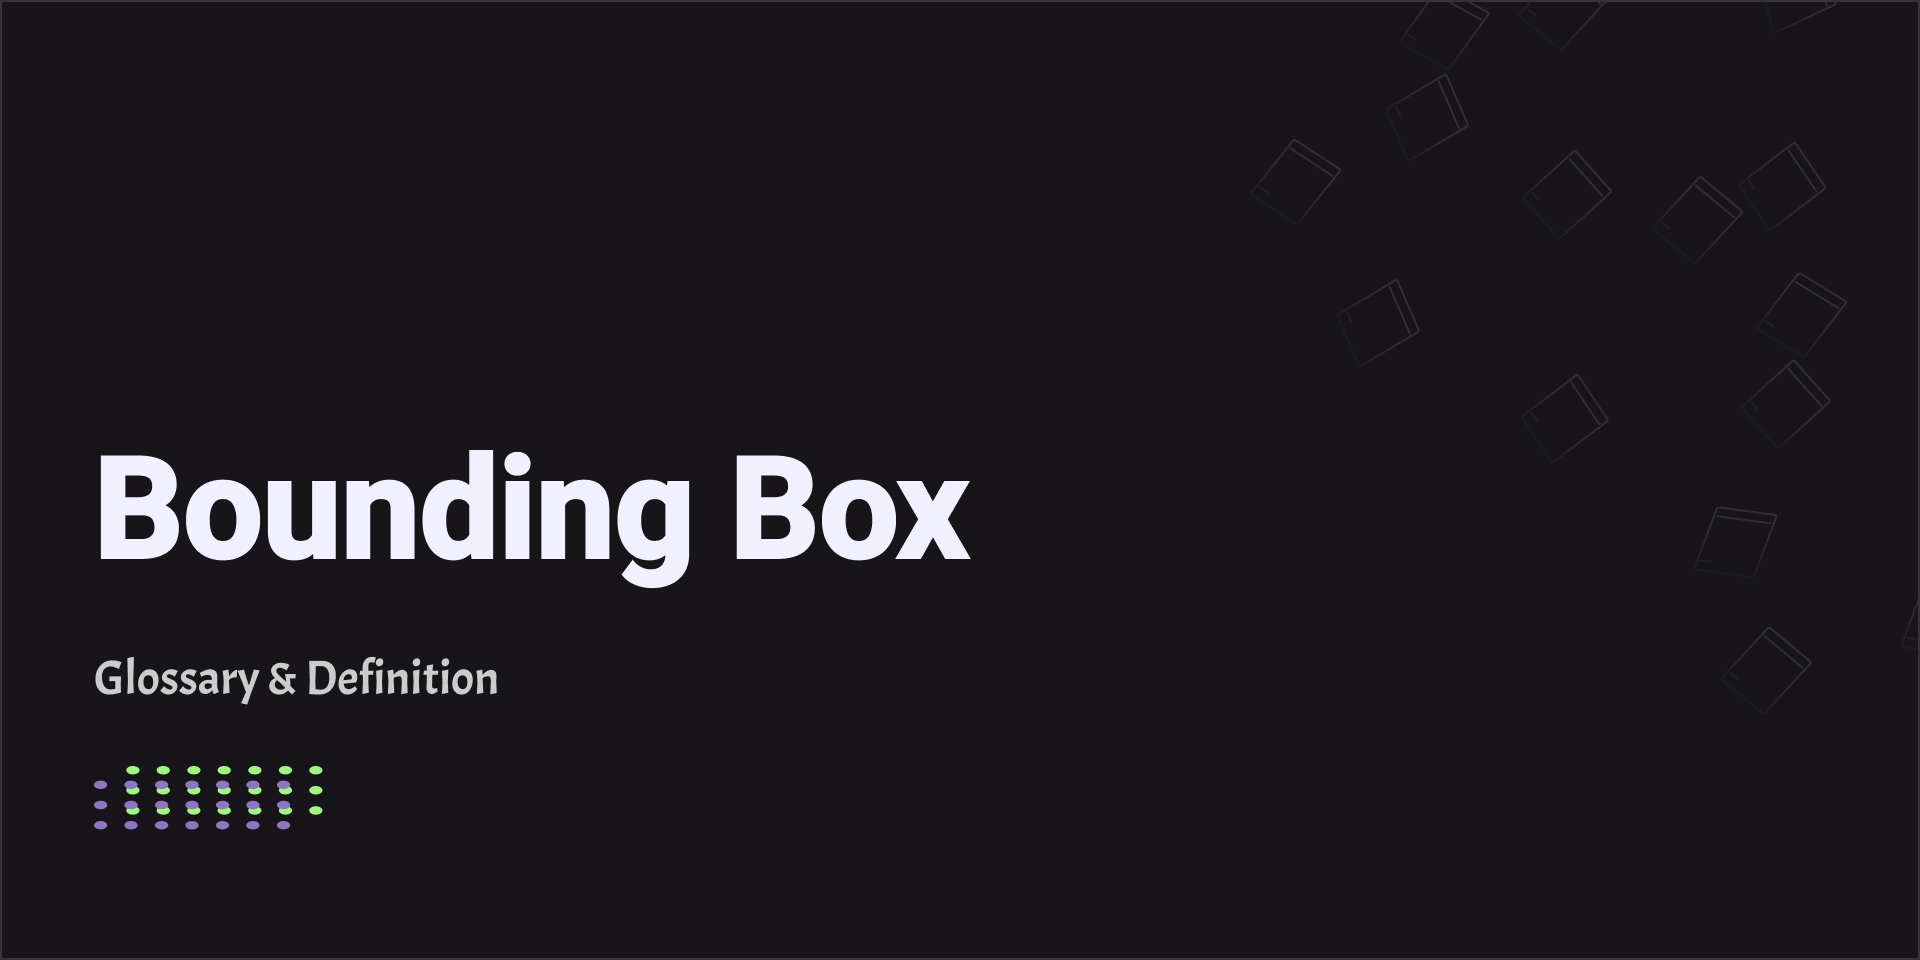 Bounding Box